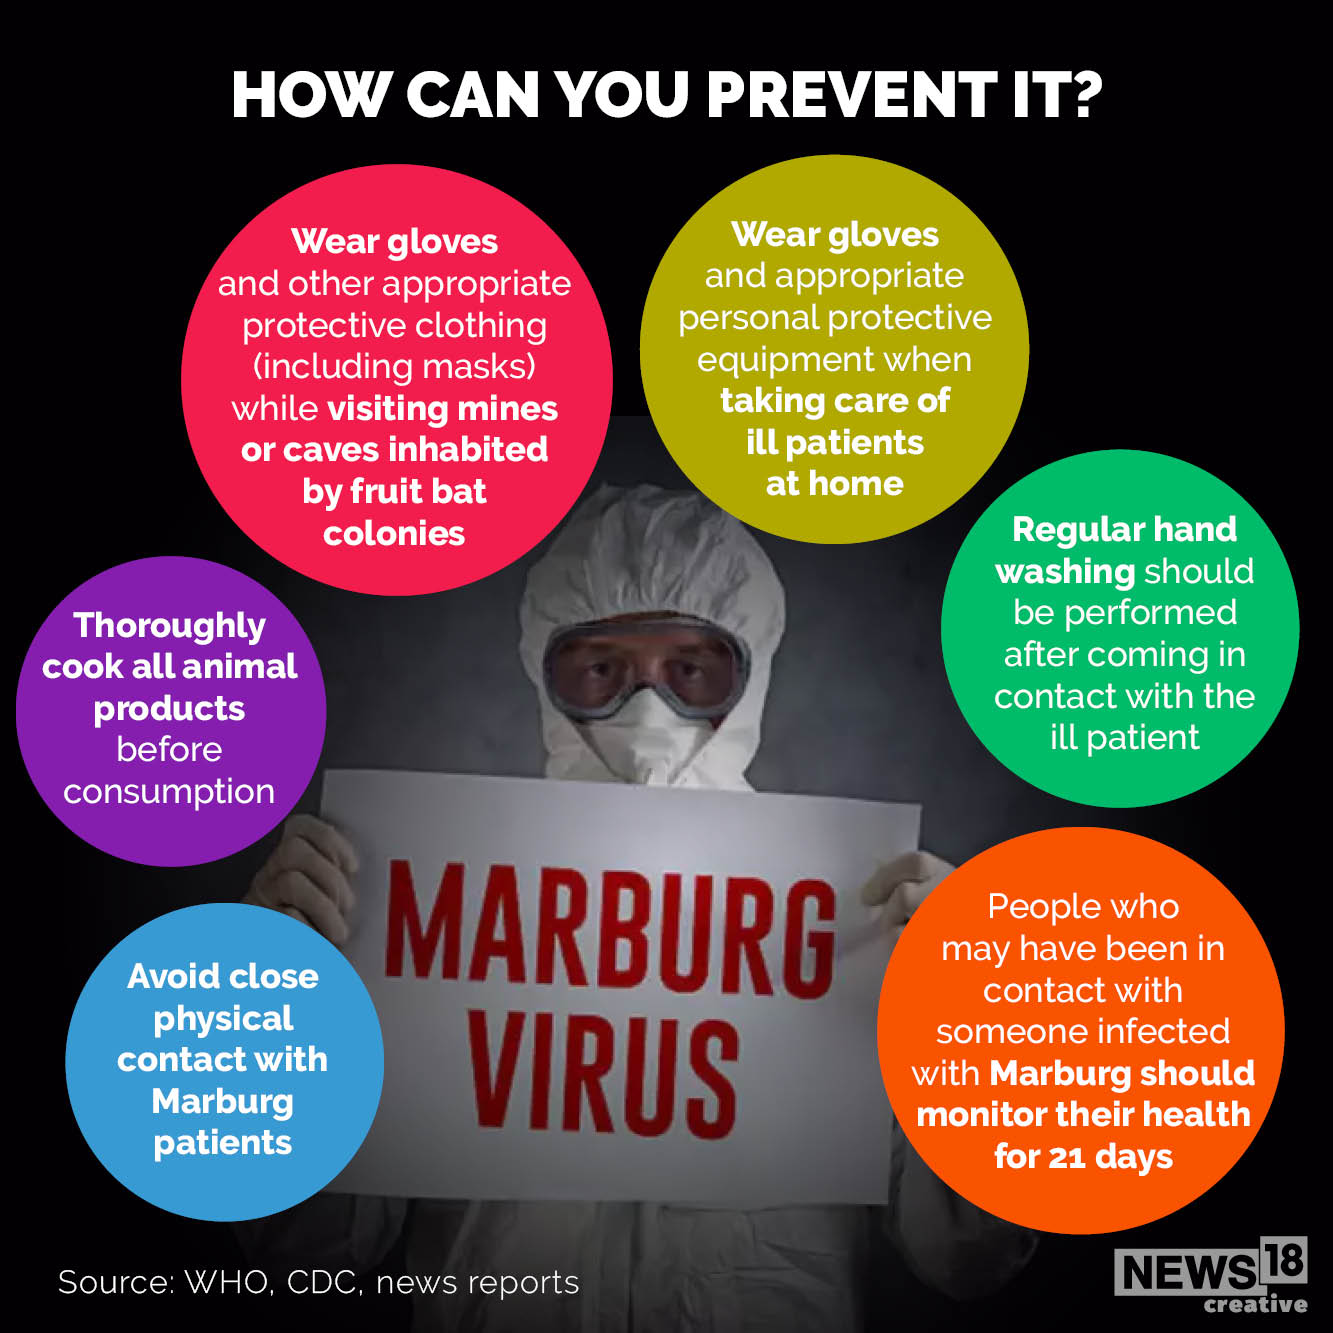 Marburg virus prevention